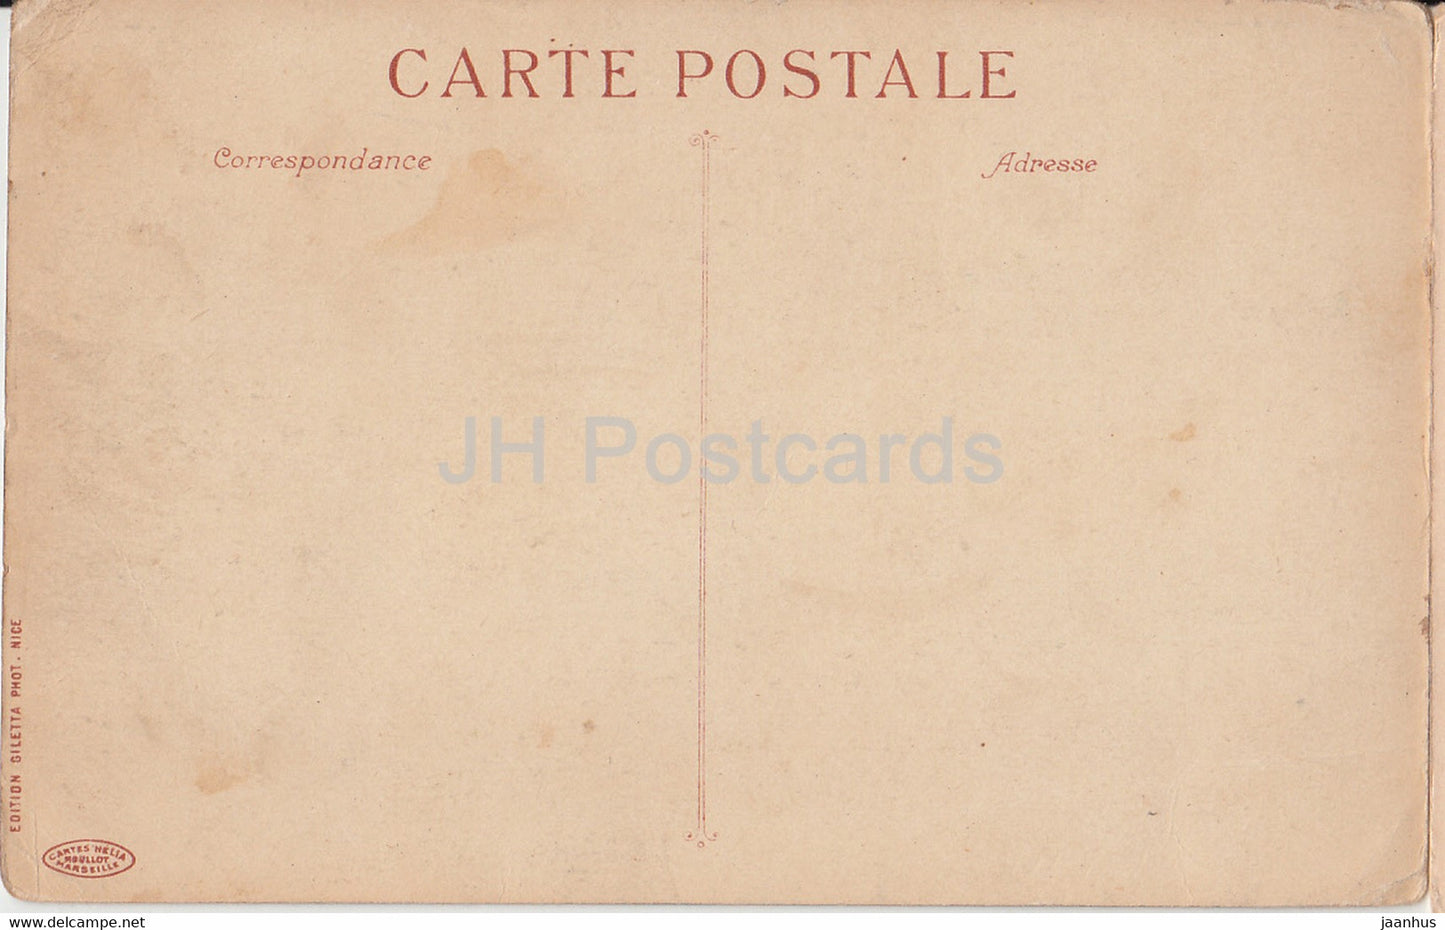 Cote d'Azur - a vol d'oiseau de Menton a Cannes - 2 - old postcard - France - unused